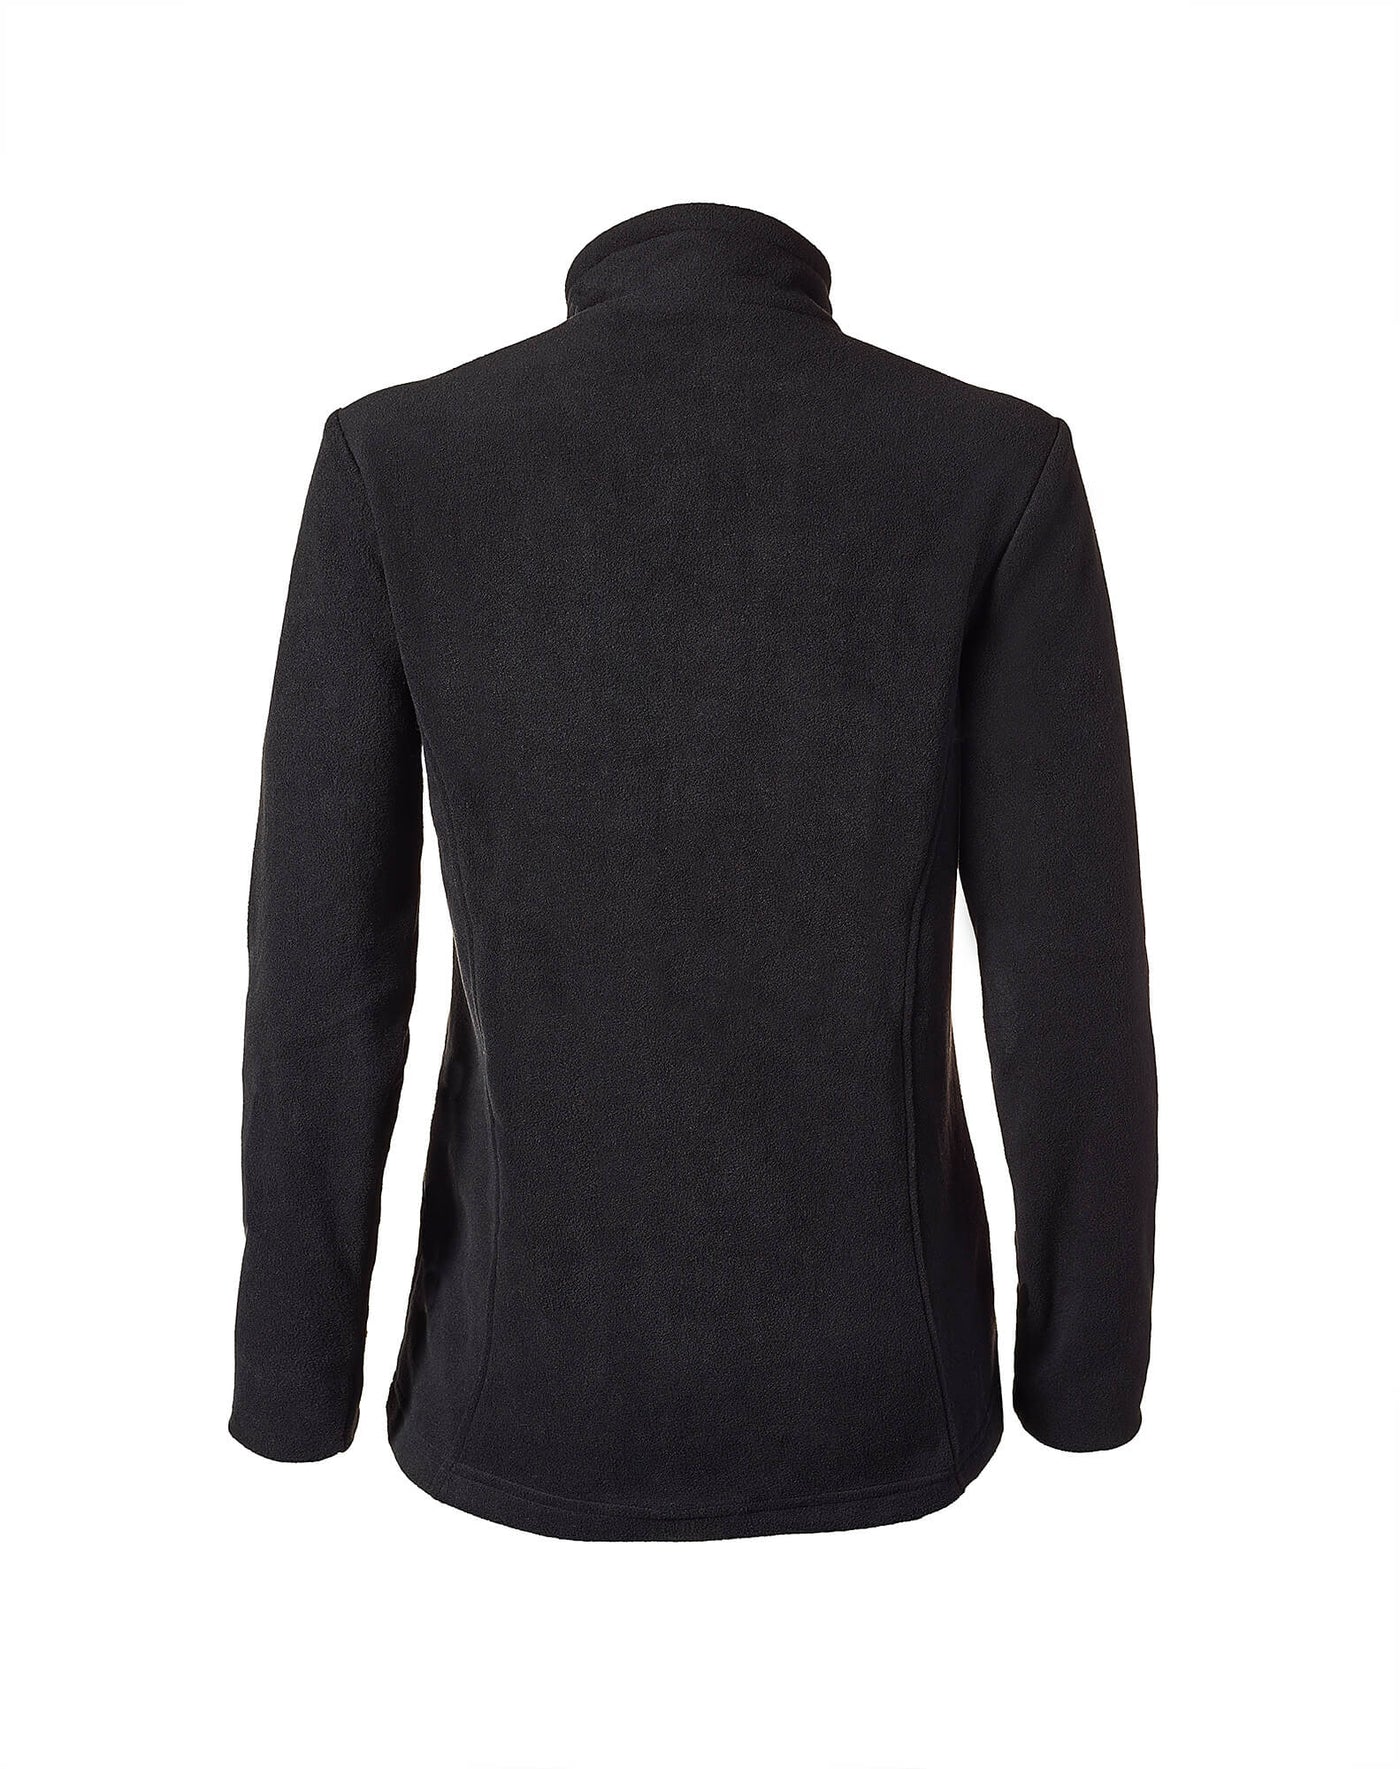 Manteau de laine polaire Malli - Femme - PROMO 19.99$